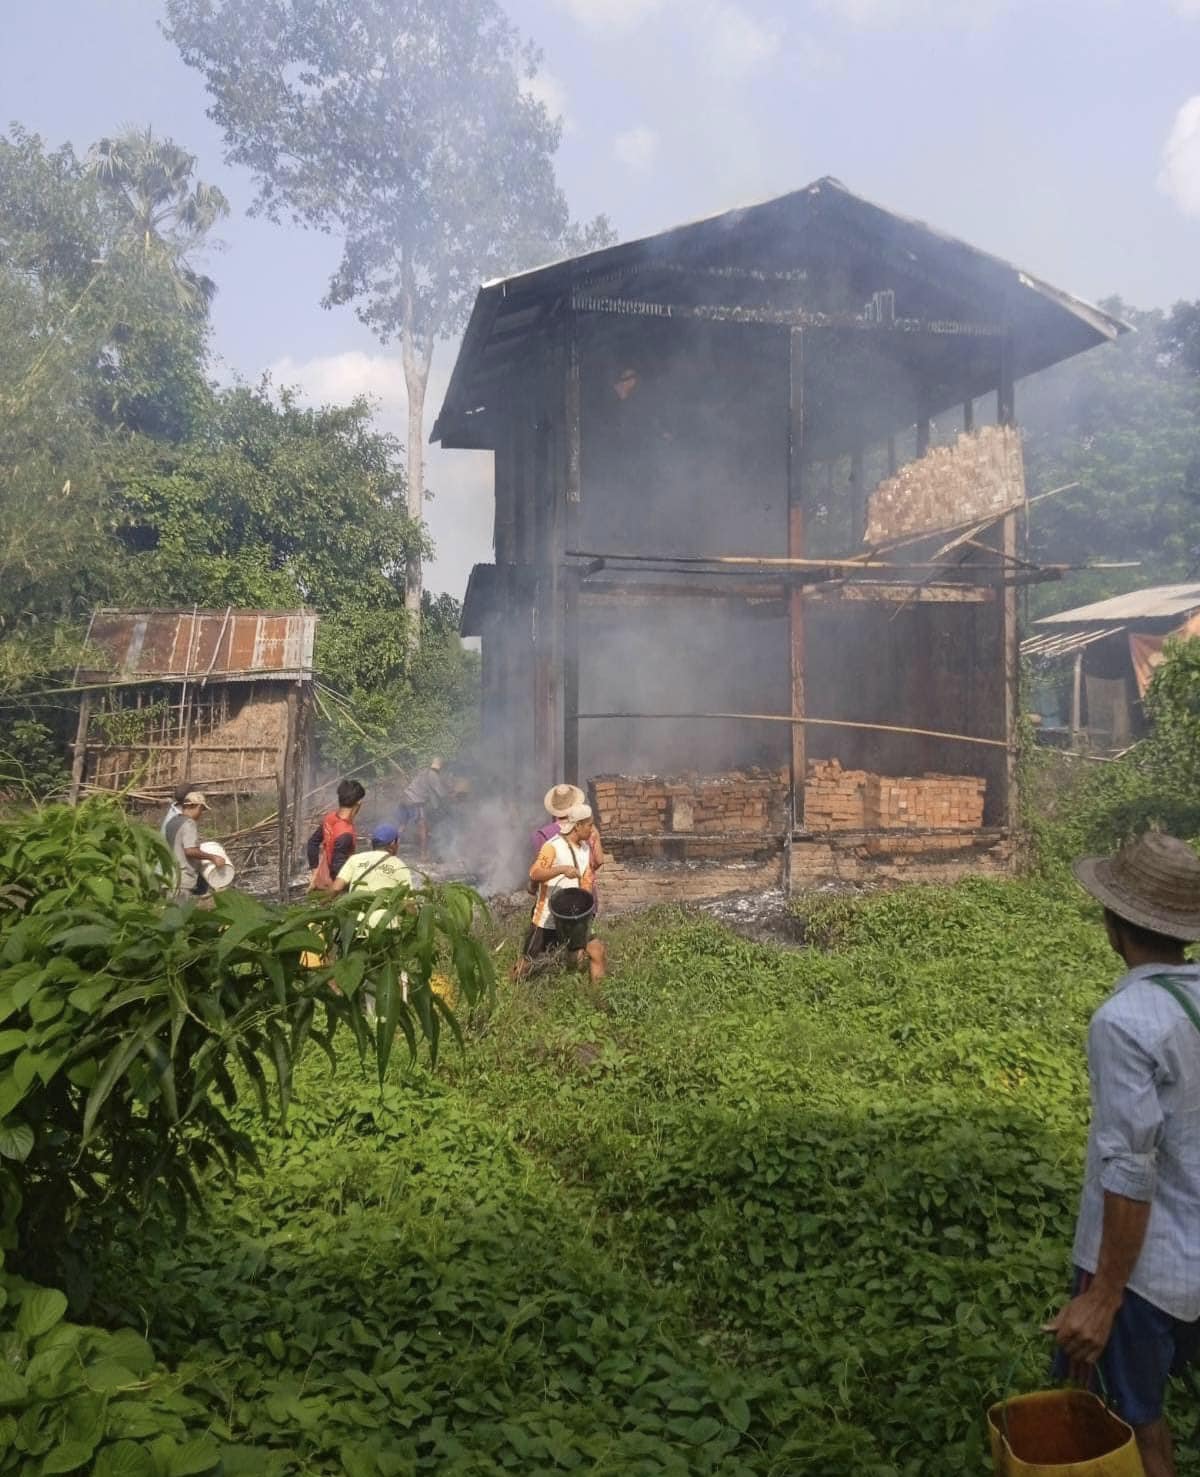 (စစ်ကောင်စီတပ် ဒရုန်းဖြင့်တိုက်ခိုက်မှုကြောင့် ရန်မျိုးအောင်ကျေးရွာရှိ နေအိမ်တစ်လုံး ထိမှန်မီးလောင်နေစဉ်။ ဓာတ်ပုံ - KNU)